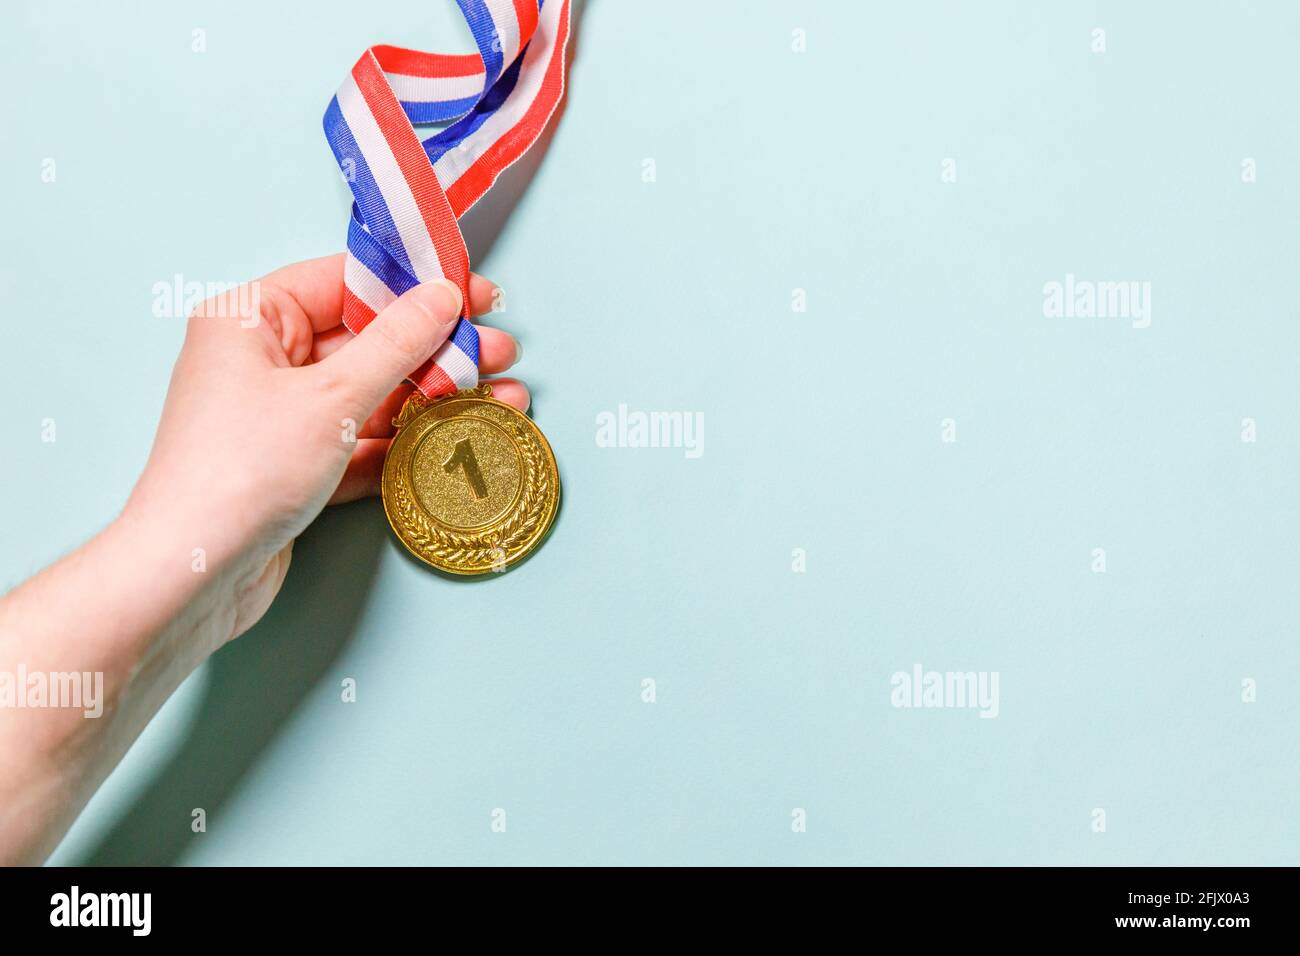 Einfach flach Lay Design Hand halten Gewinner oder Champion Gold Trophäe Medaille isoliert auf blau bunten Hintergrund. Sieg erster Platz des Wettbewerbs Stockfoto